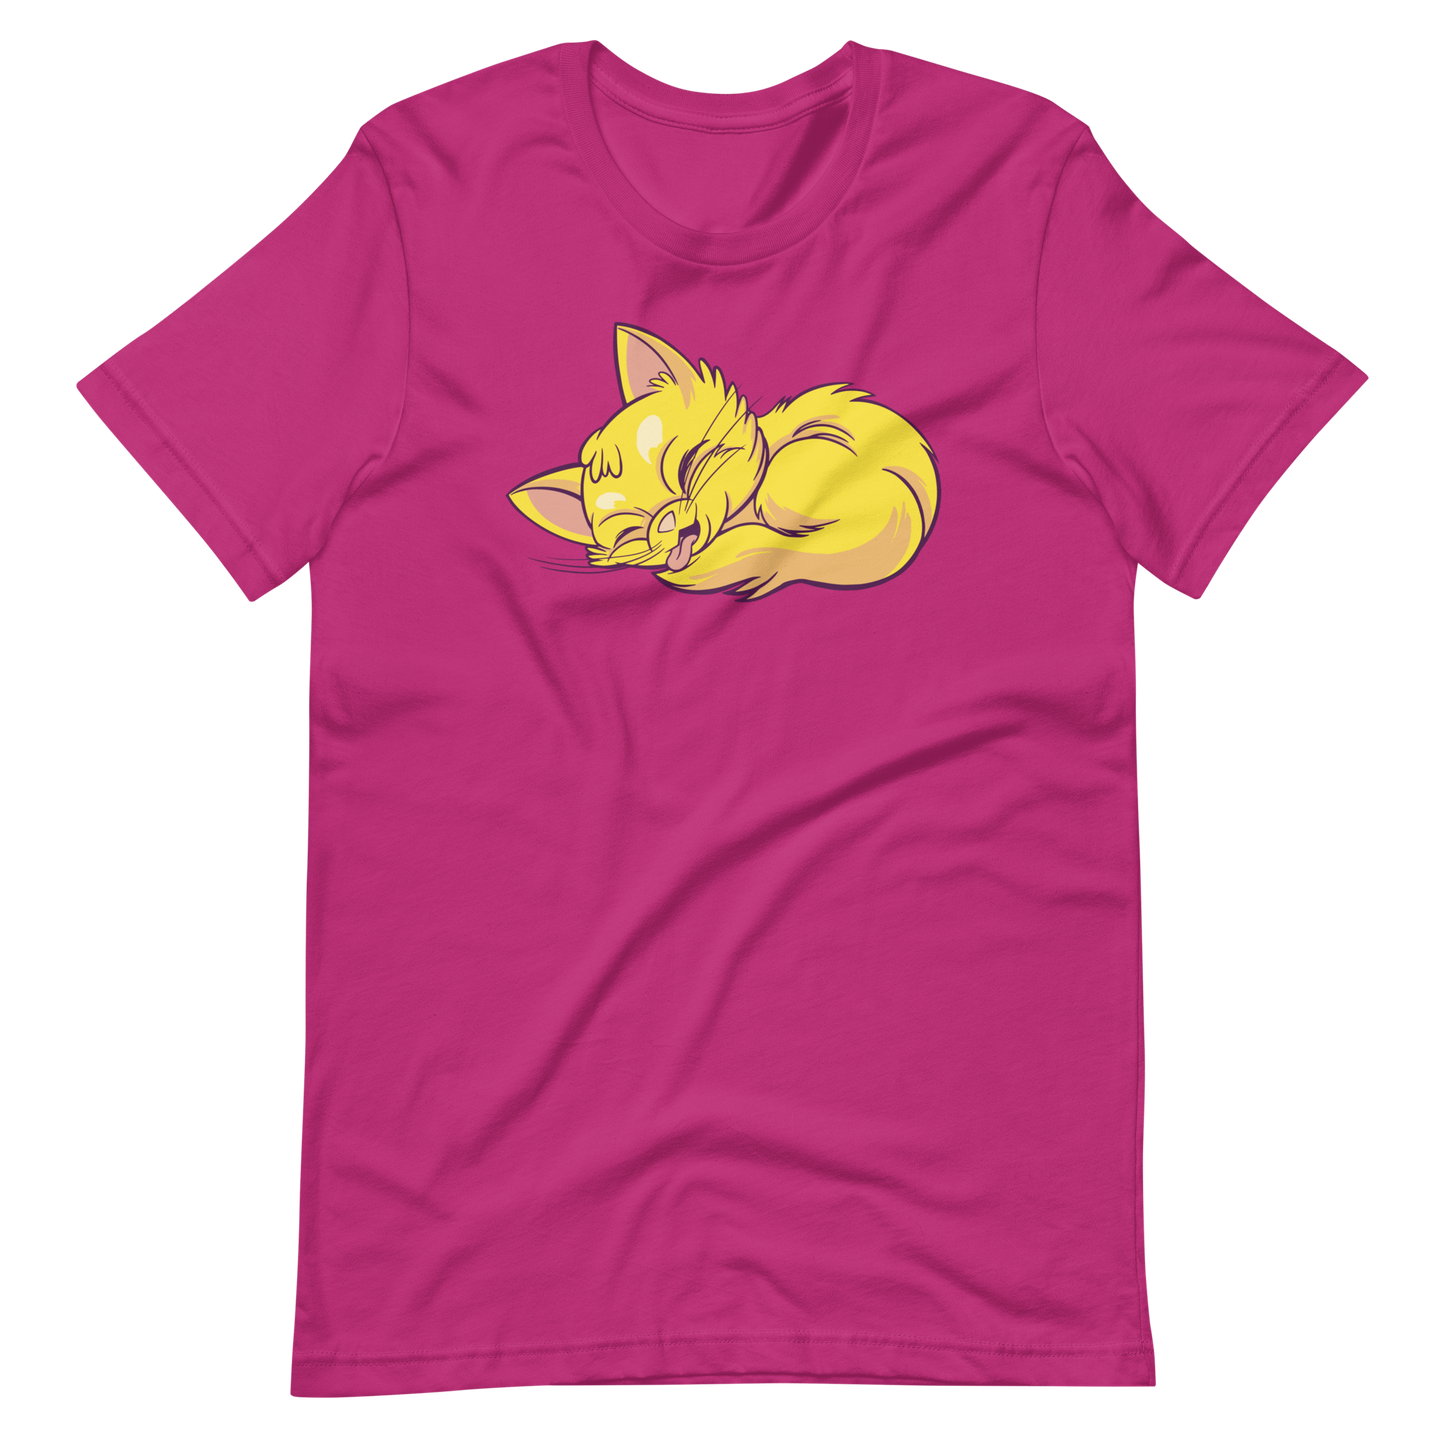 Lovely sleeping cat | Unisex t-shirt